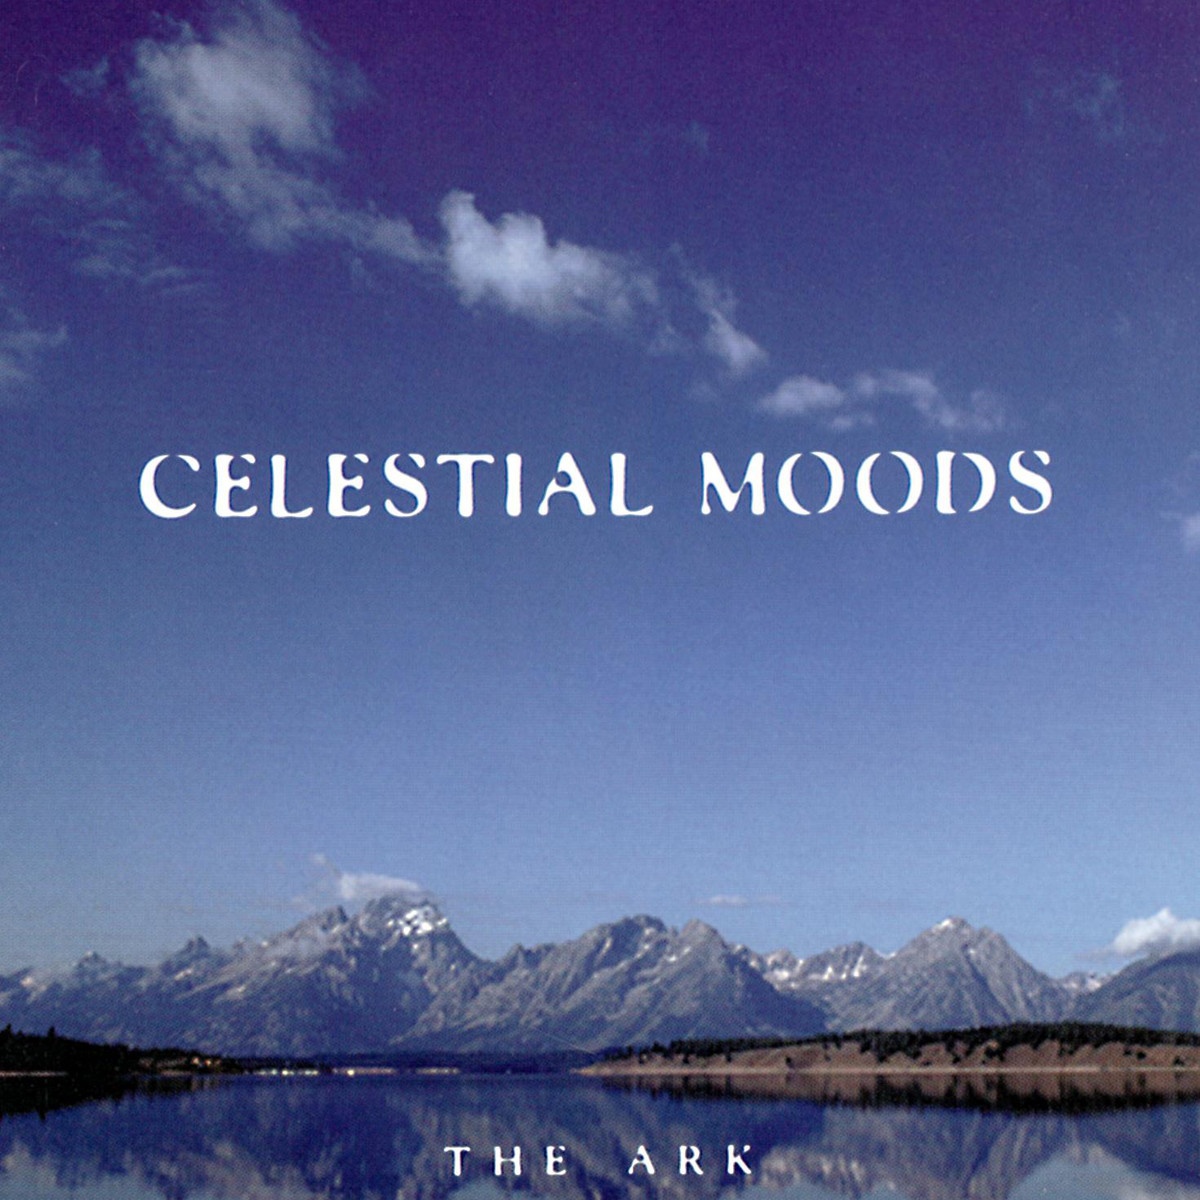 Celestial Moods